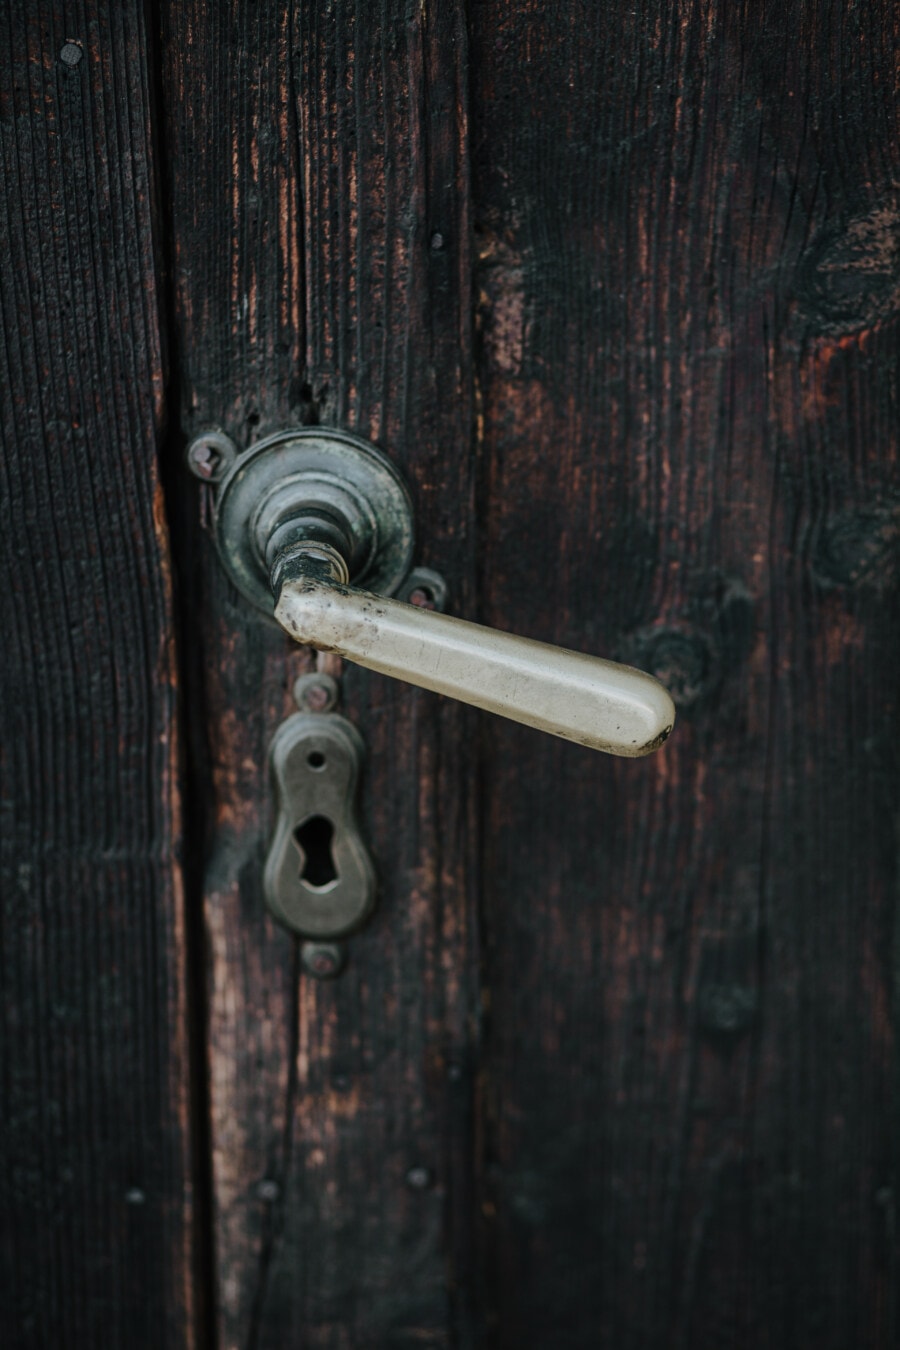 porta, porta da frente, buraco da fechadura, velho, história, vintage, buraco, dispositivo, madeira, segurança